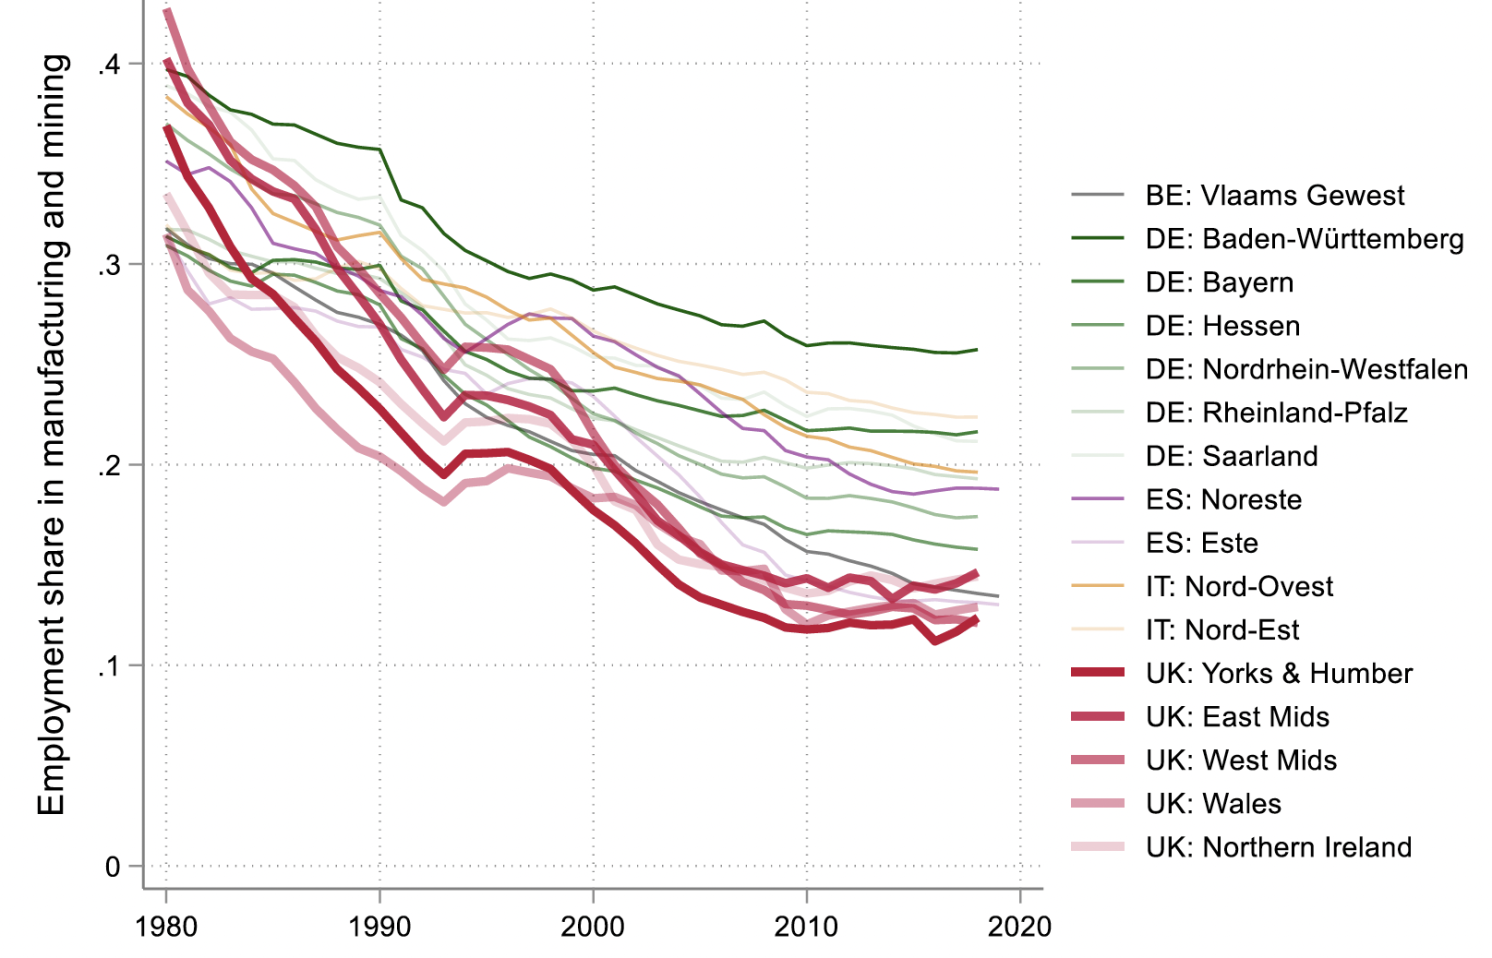 Figure 1 UK regions deindustrialised much faster than Western European peer regions